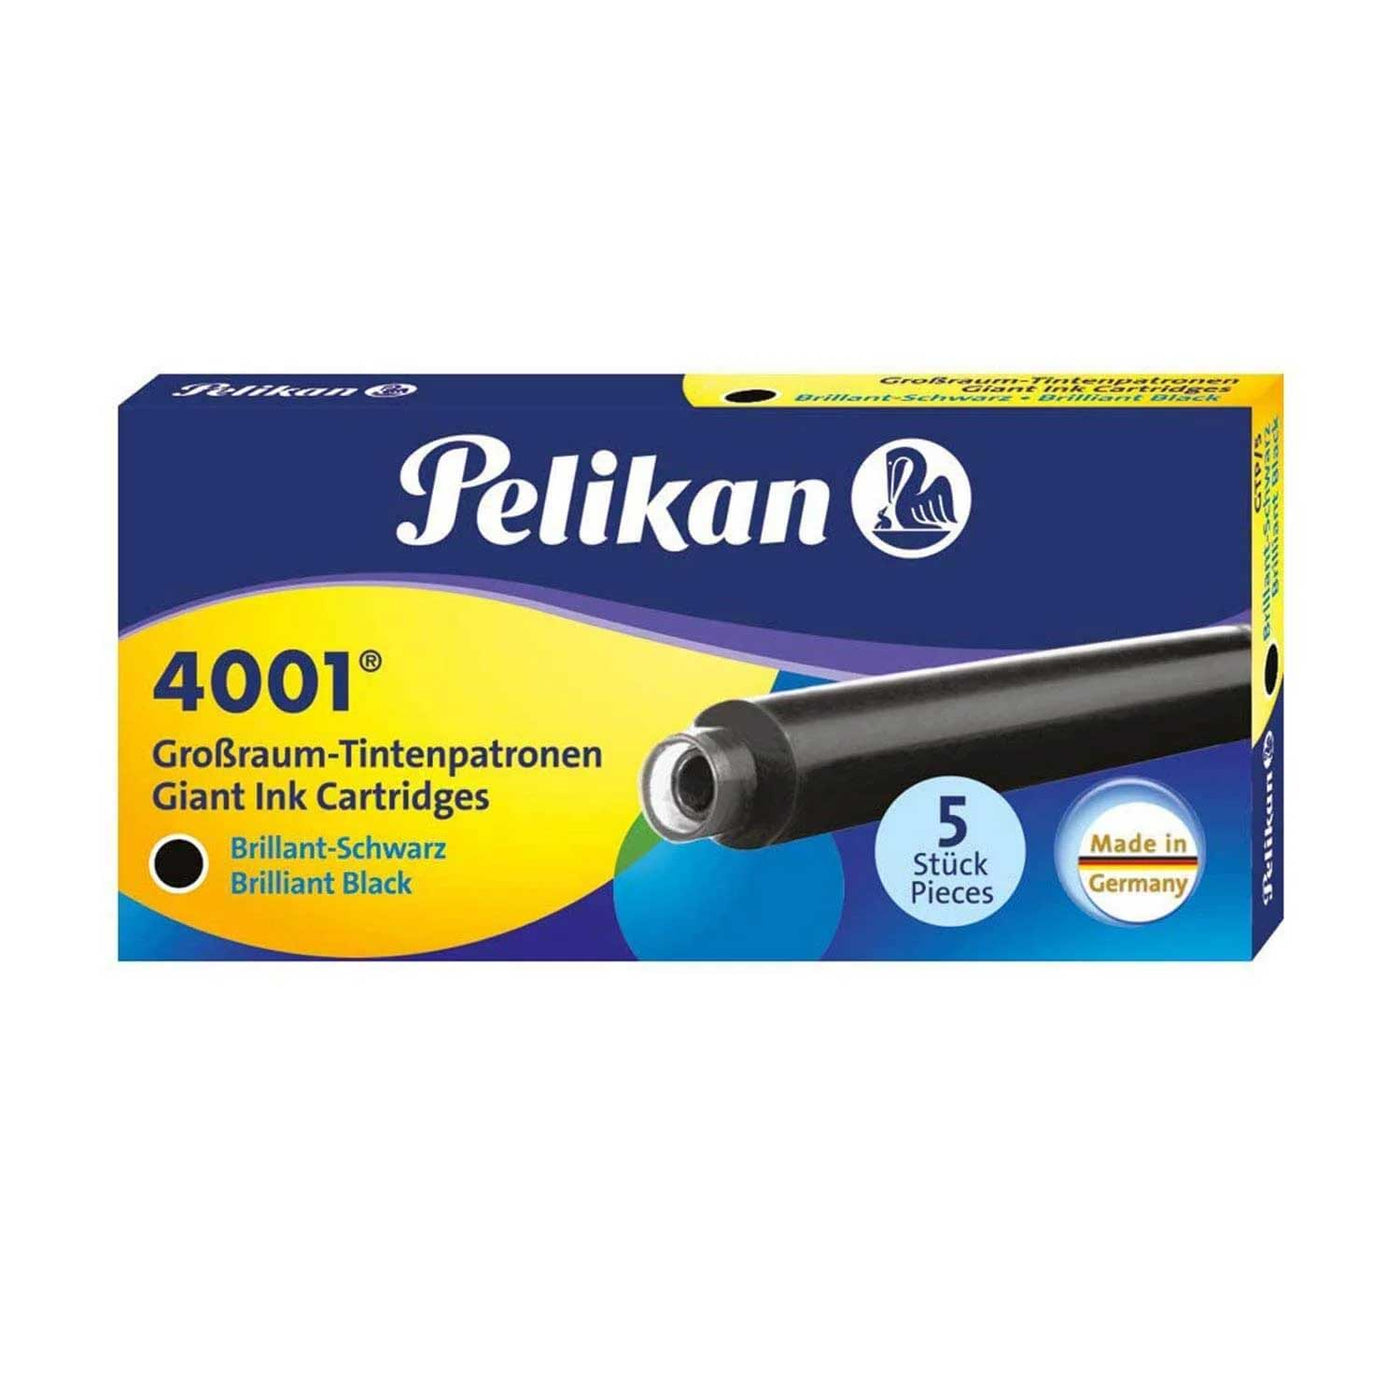 Pelikan 4001 Large Ink Cartridge Pack of 5 Brilliant Black 1